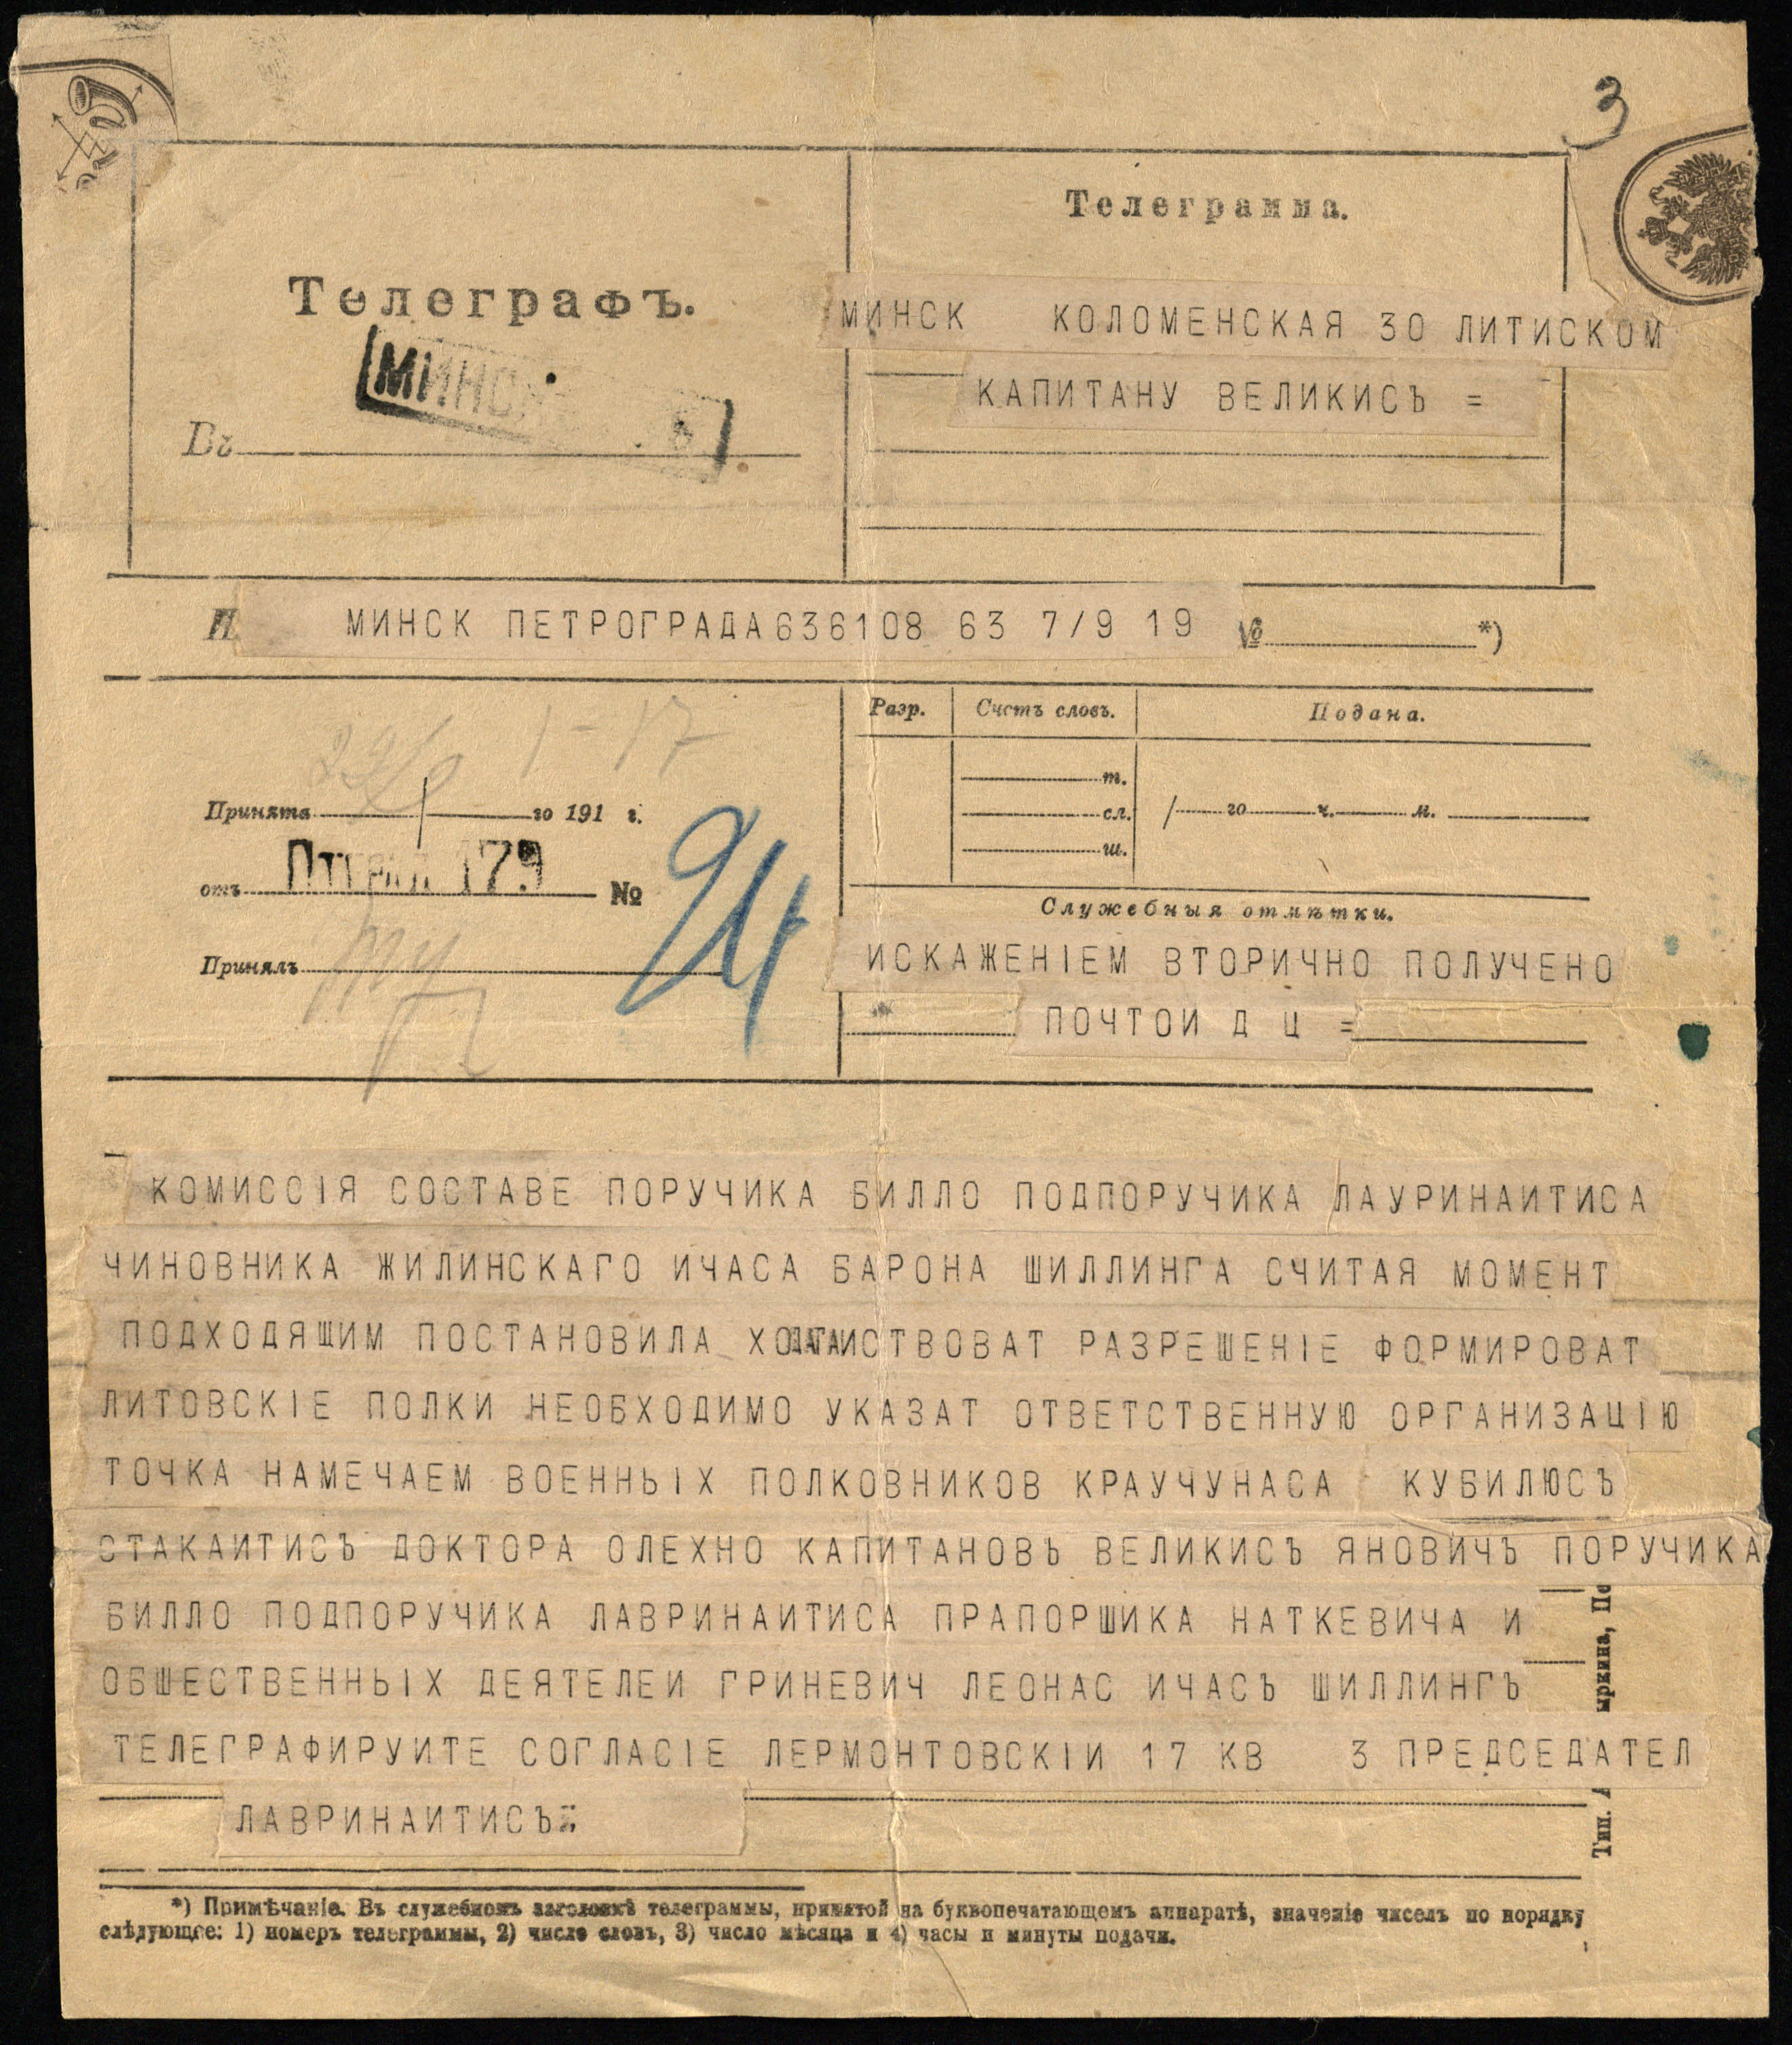 Lietuvių karininkų sąjungos centro komiteto pirmininko karininko Jono Martyno Laurinaičio pasirašyta telegrama, adresuota kapitonui Mykolui Velykiui